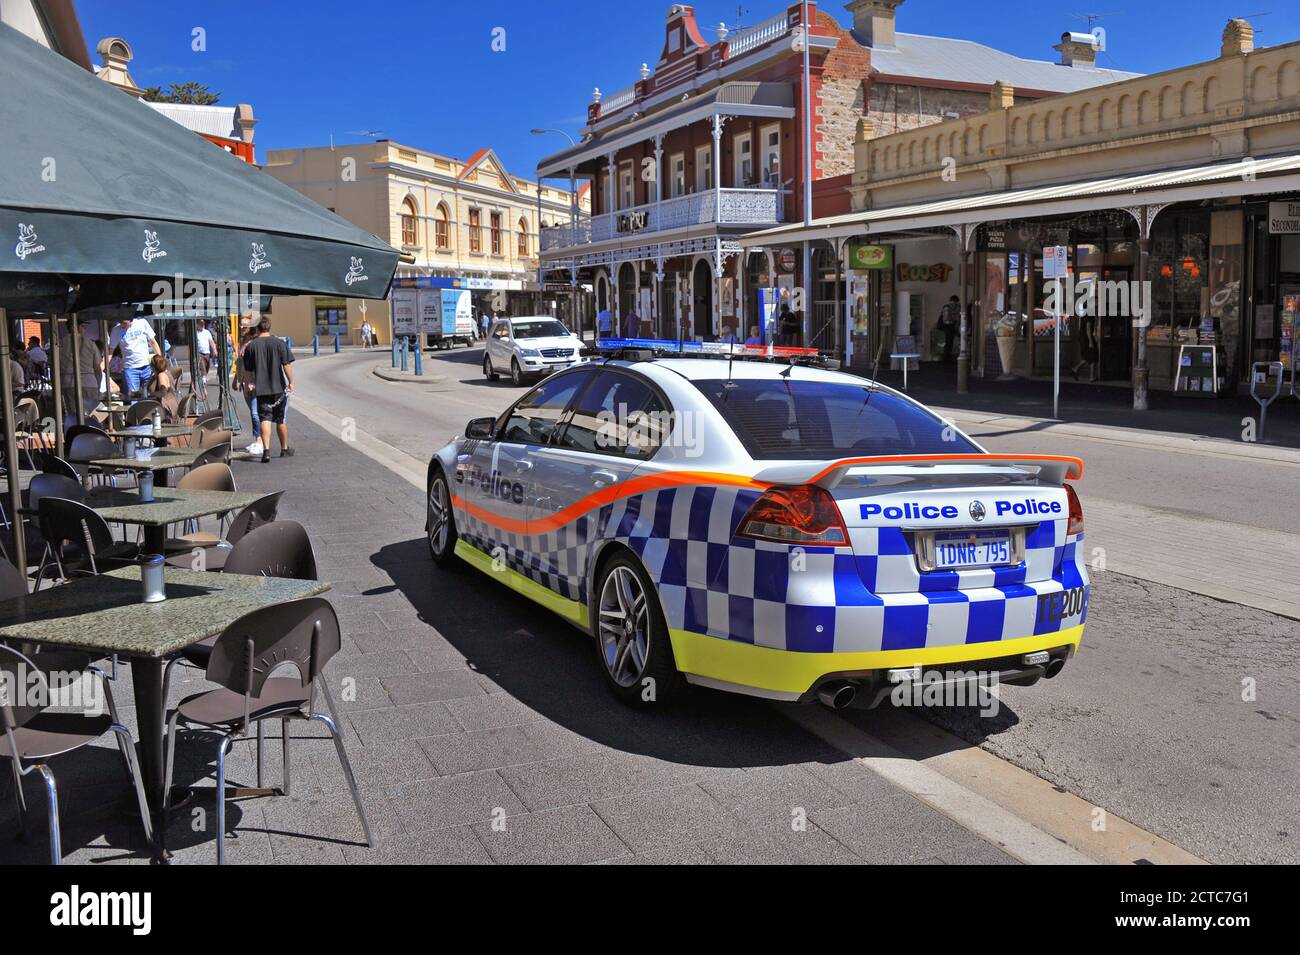 Un coche de la policía Holden, en la librea de la policía australiana occidental, en un ambiente urbano. Foto de stock